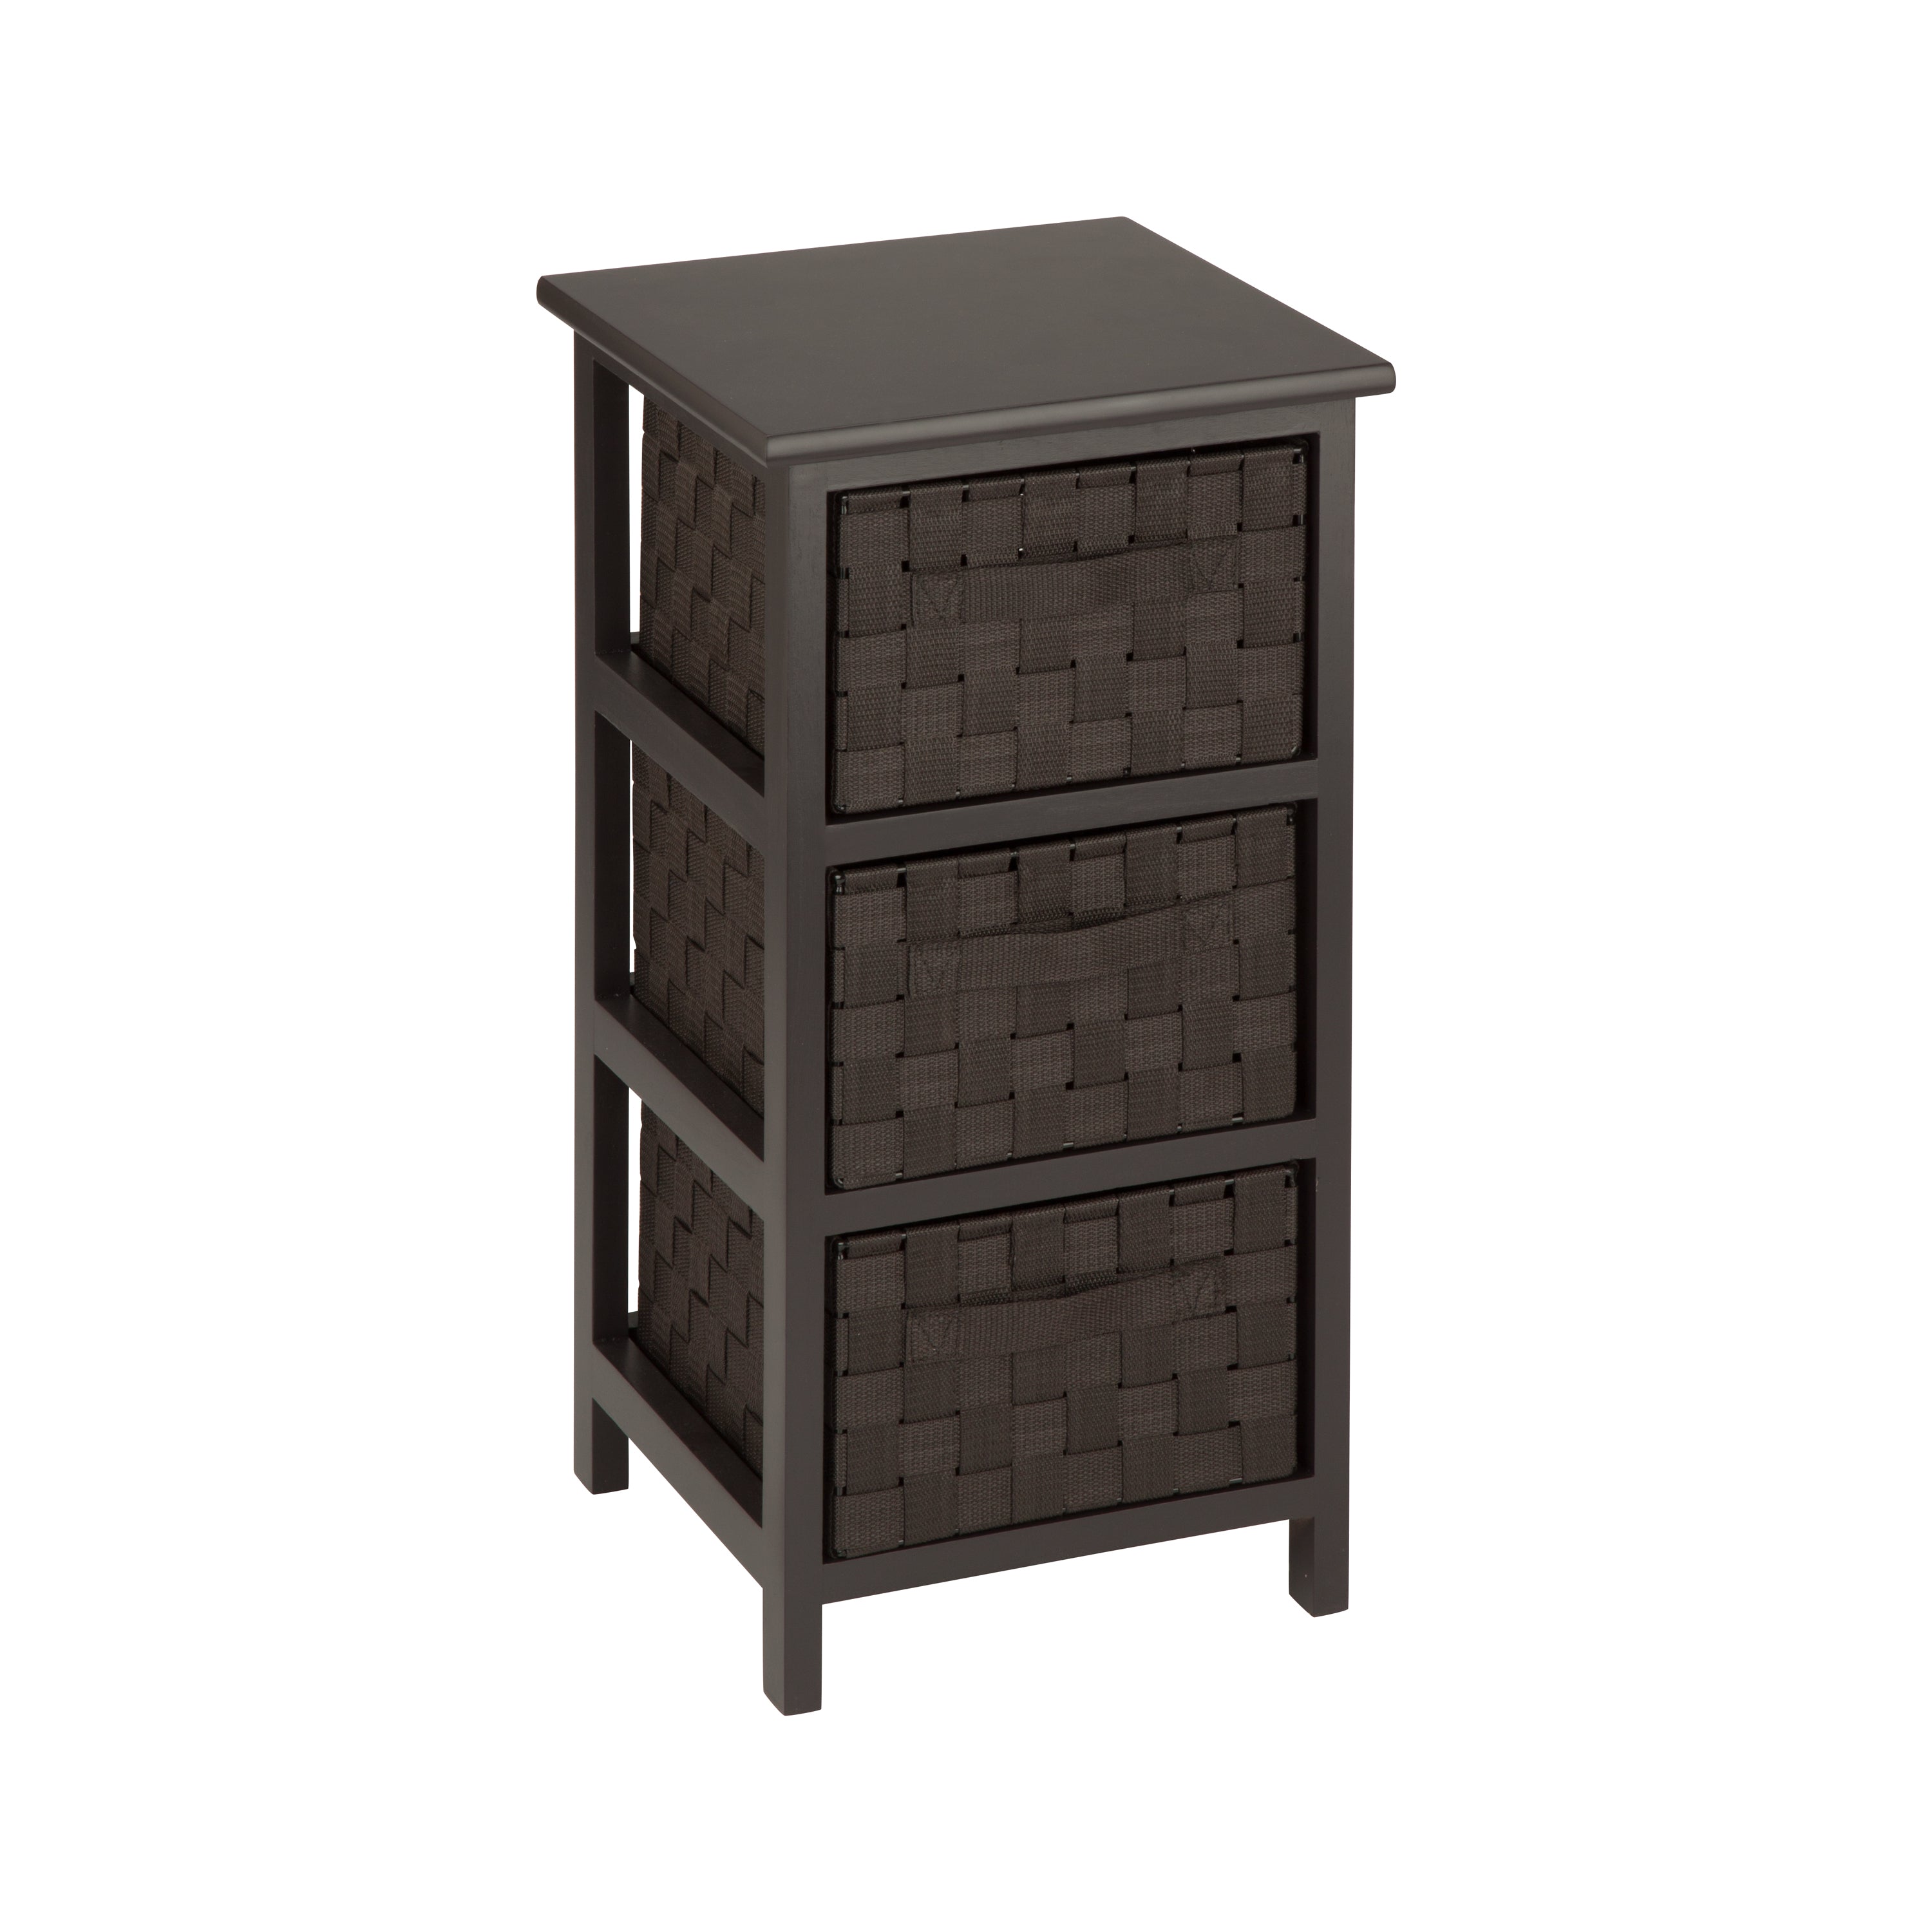 5 Drawers Chest, Wood Storage Dresser with Wheels, Craft Storage Organizer  and Storage Drawer Office Drawer Unit Espresso 